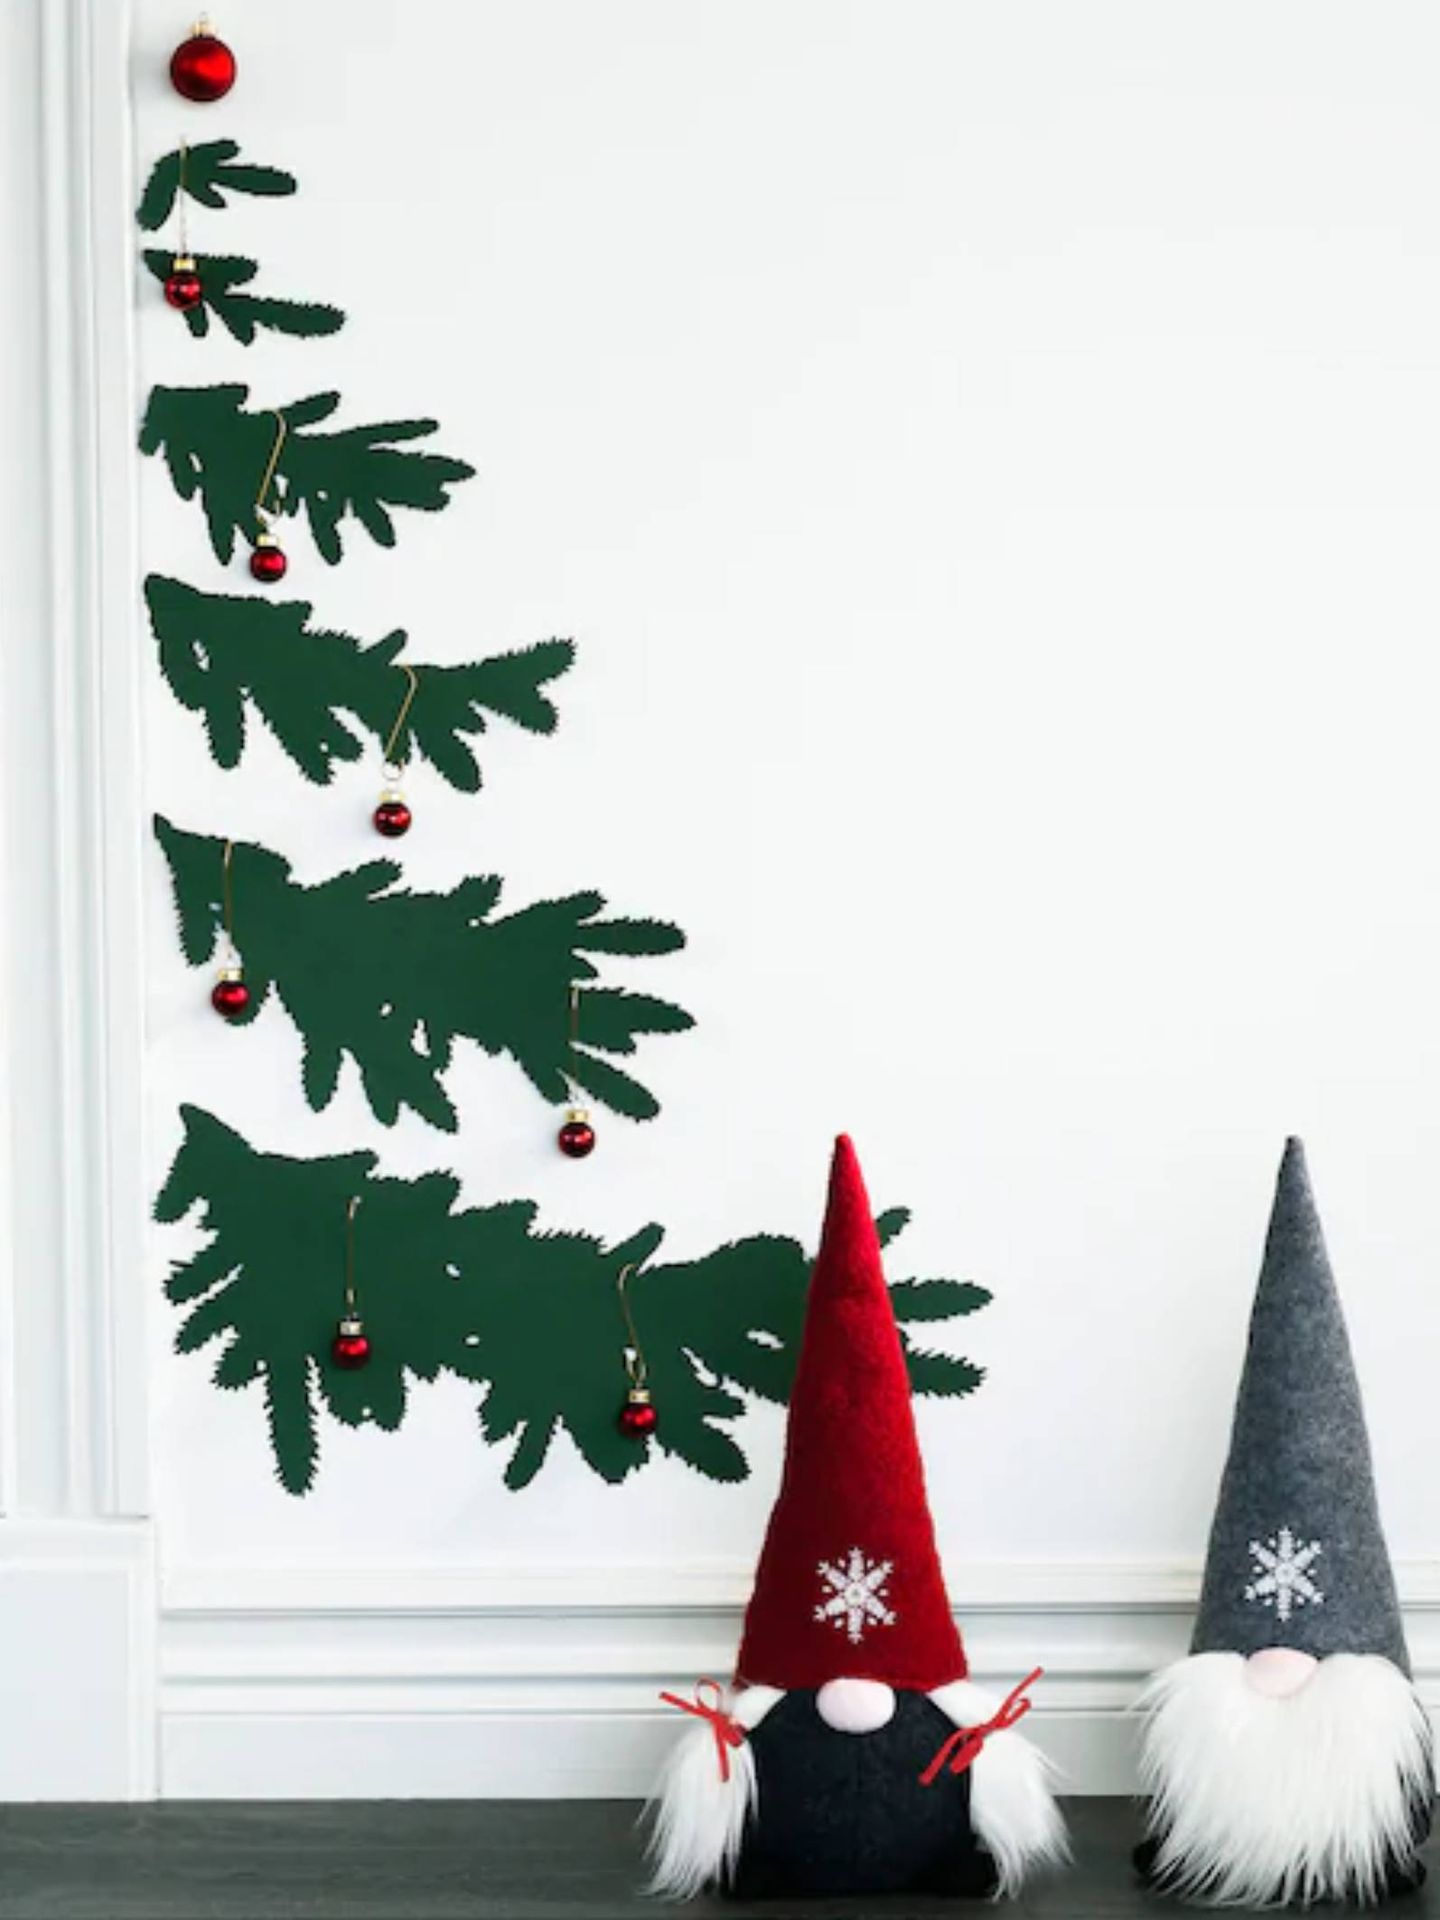 Originales ideas de Ikea para tu árbol de Navidad. (Cortesía)